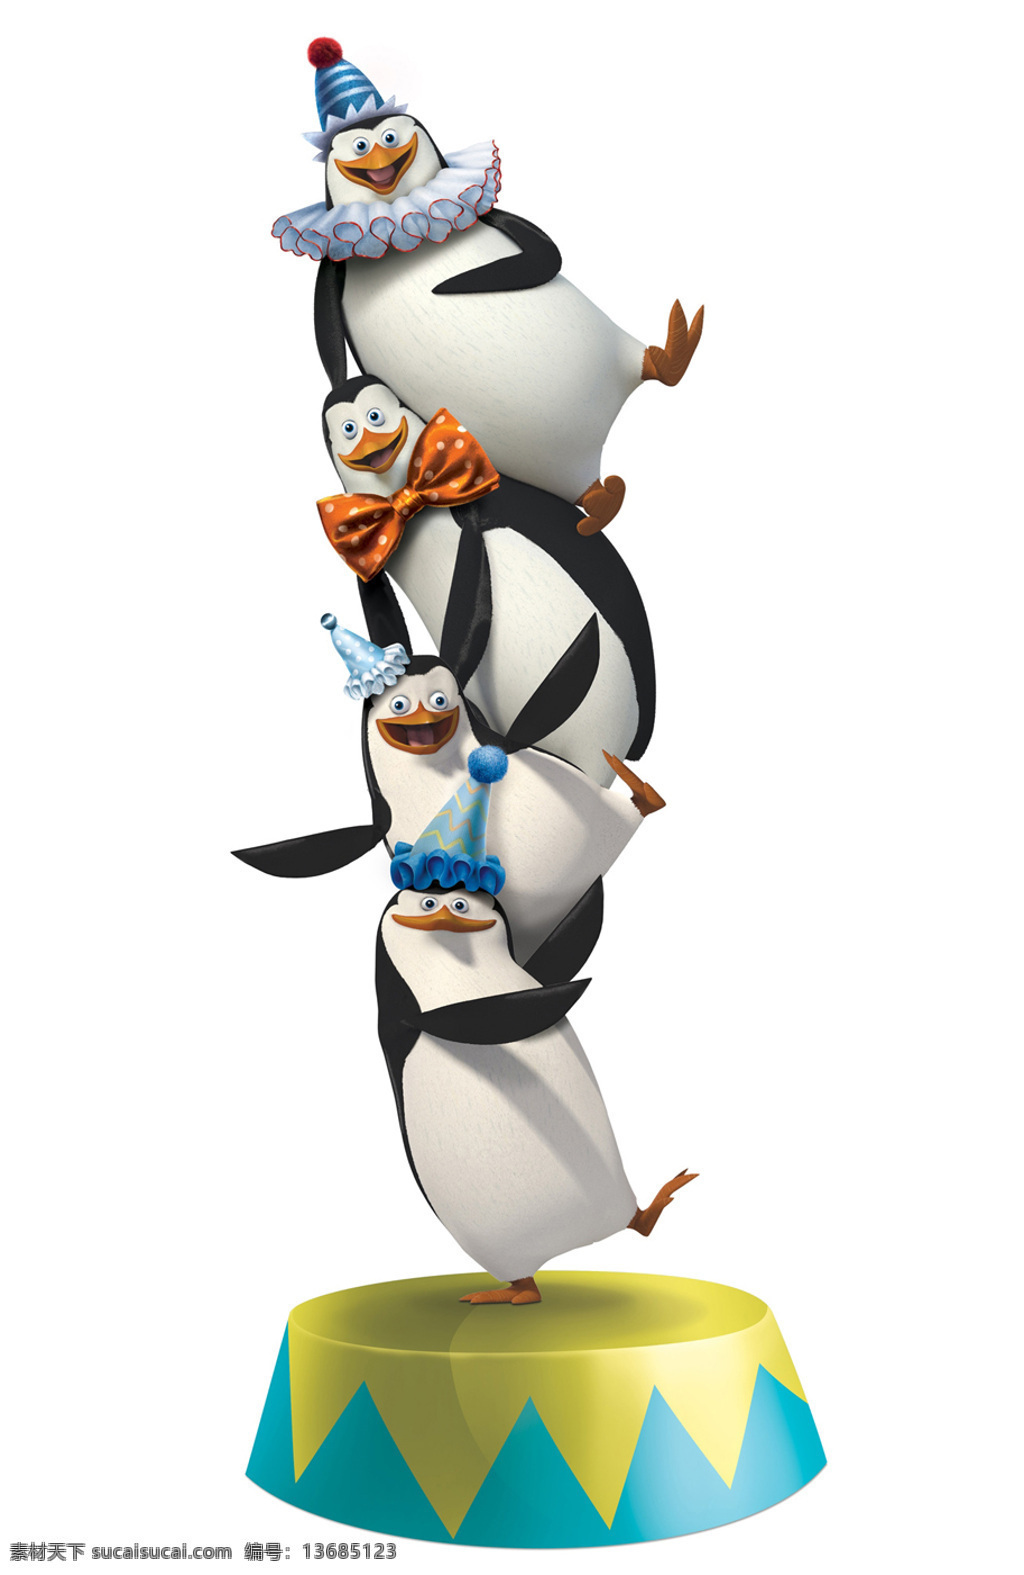 位图免费下载 动物 服装图案 企鹅 位图 热门动画 马达加斯加3 面料图库 服装设计 图案花型